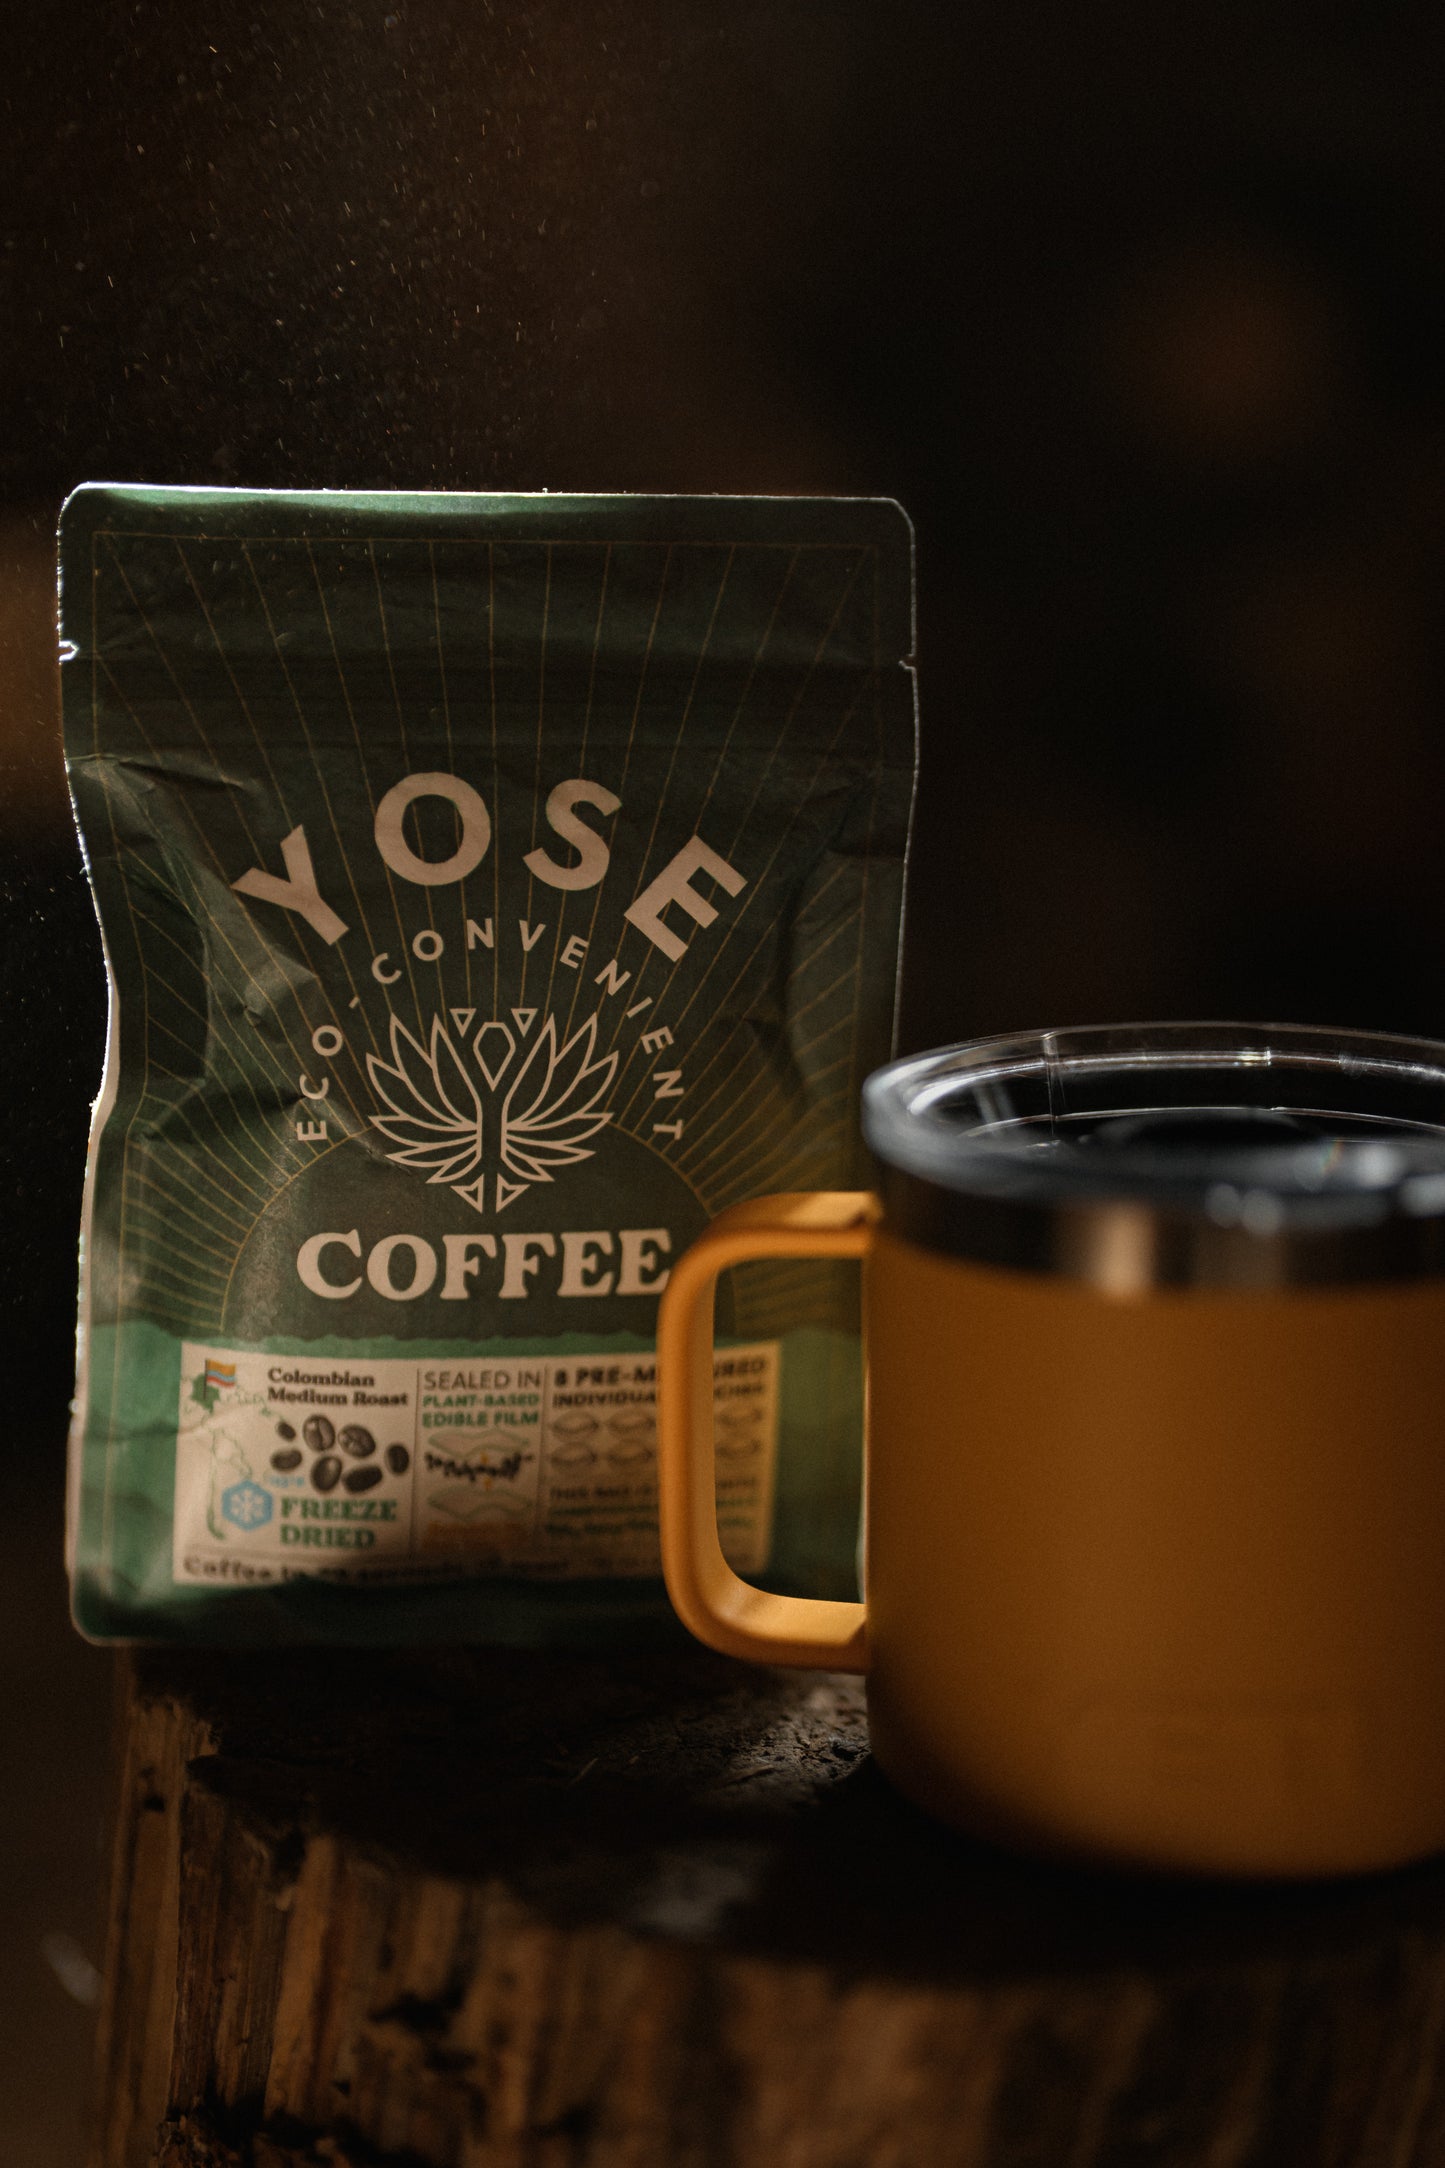 YOSE Coffee gift card